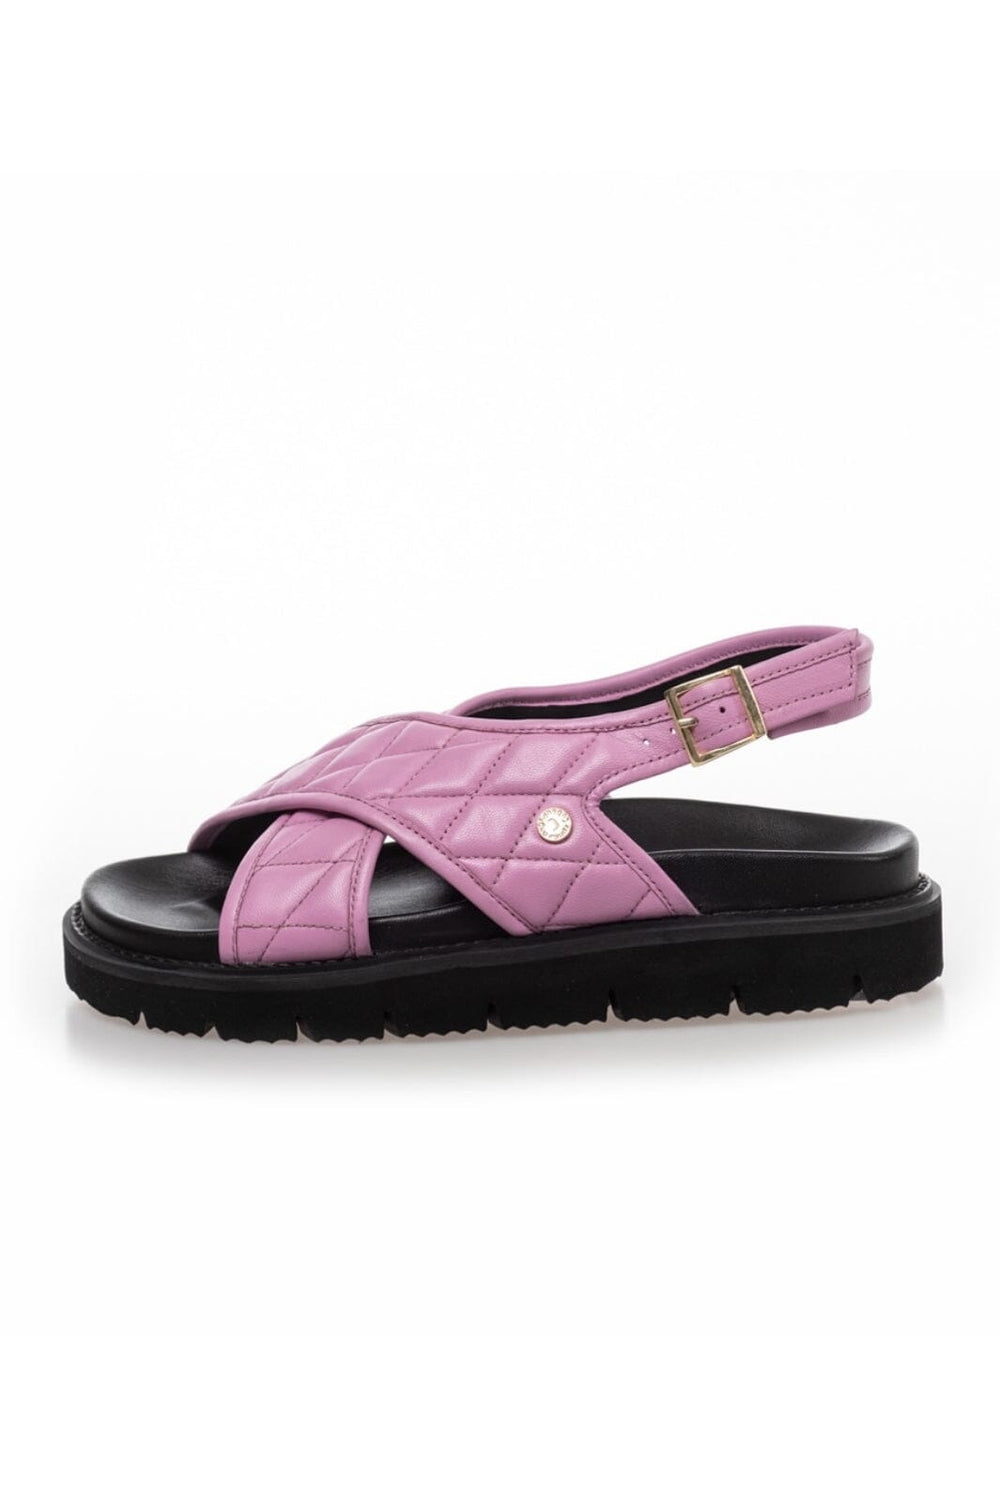 Forudbestilling - Copenhagen Shoes - Going Wild - 0044 Pink - (Marts/April) Sandaler 